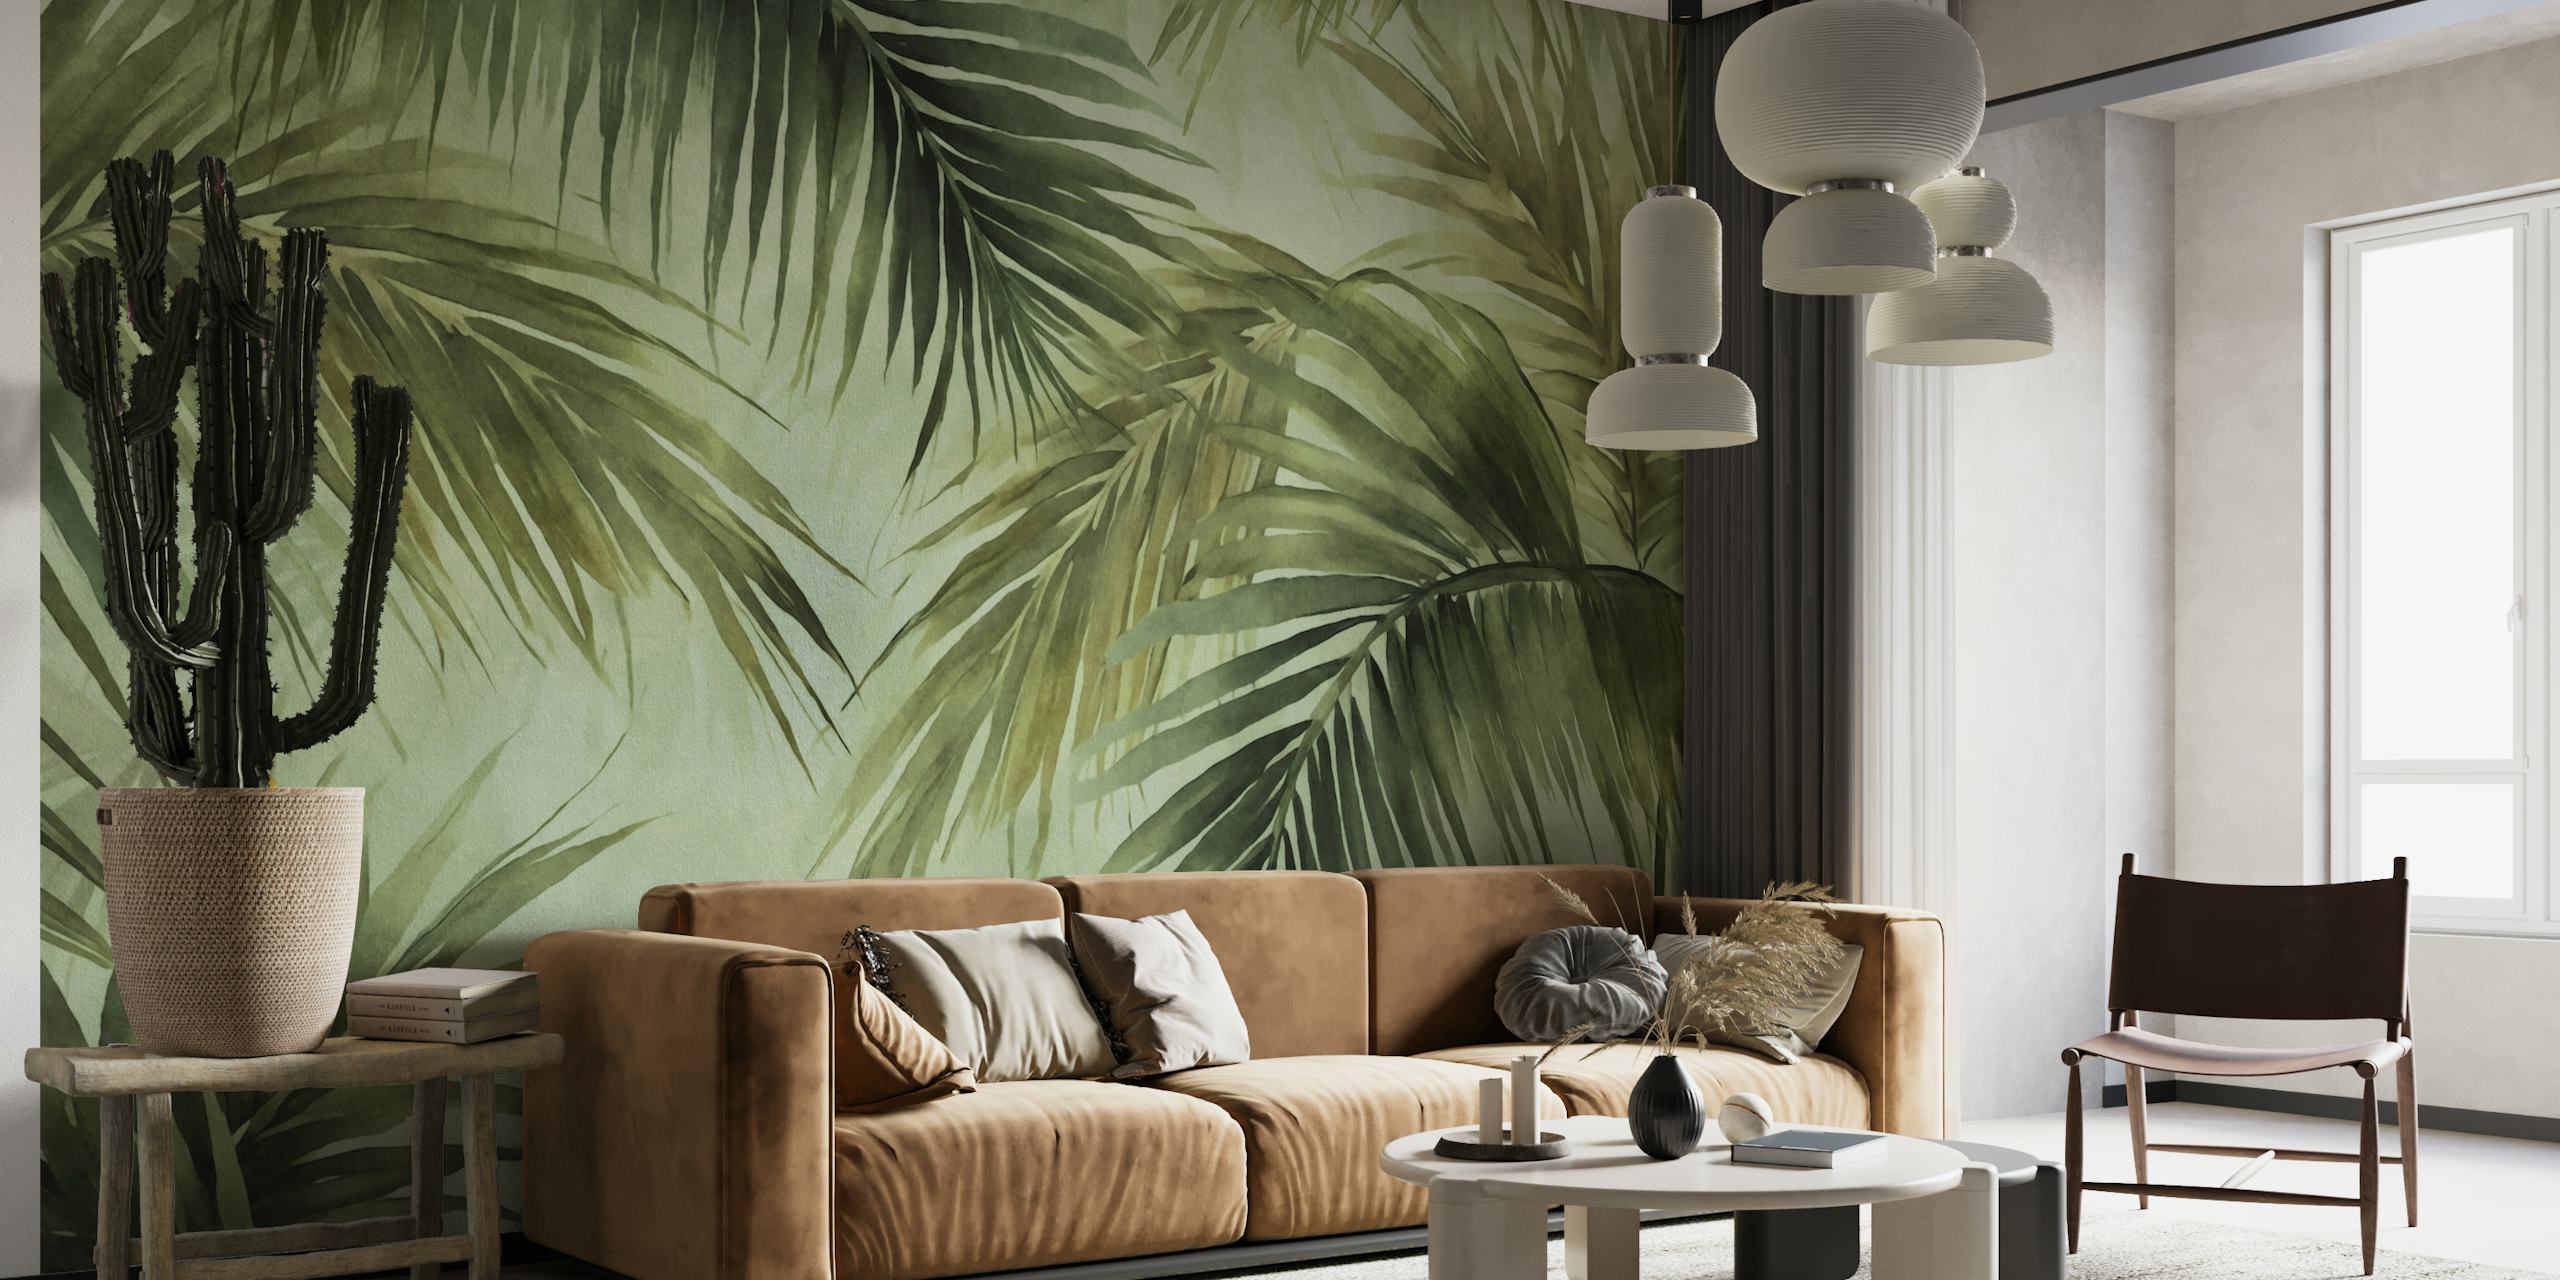 Peinture murale aquarelle en feuilles de palmier dans des teintes maussades, parfaite pour créer une ambiance d'île tropicale.